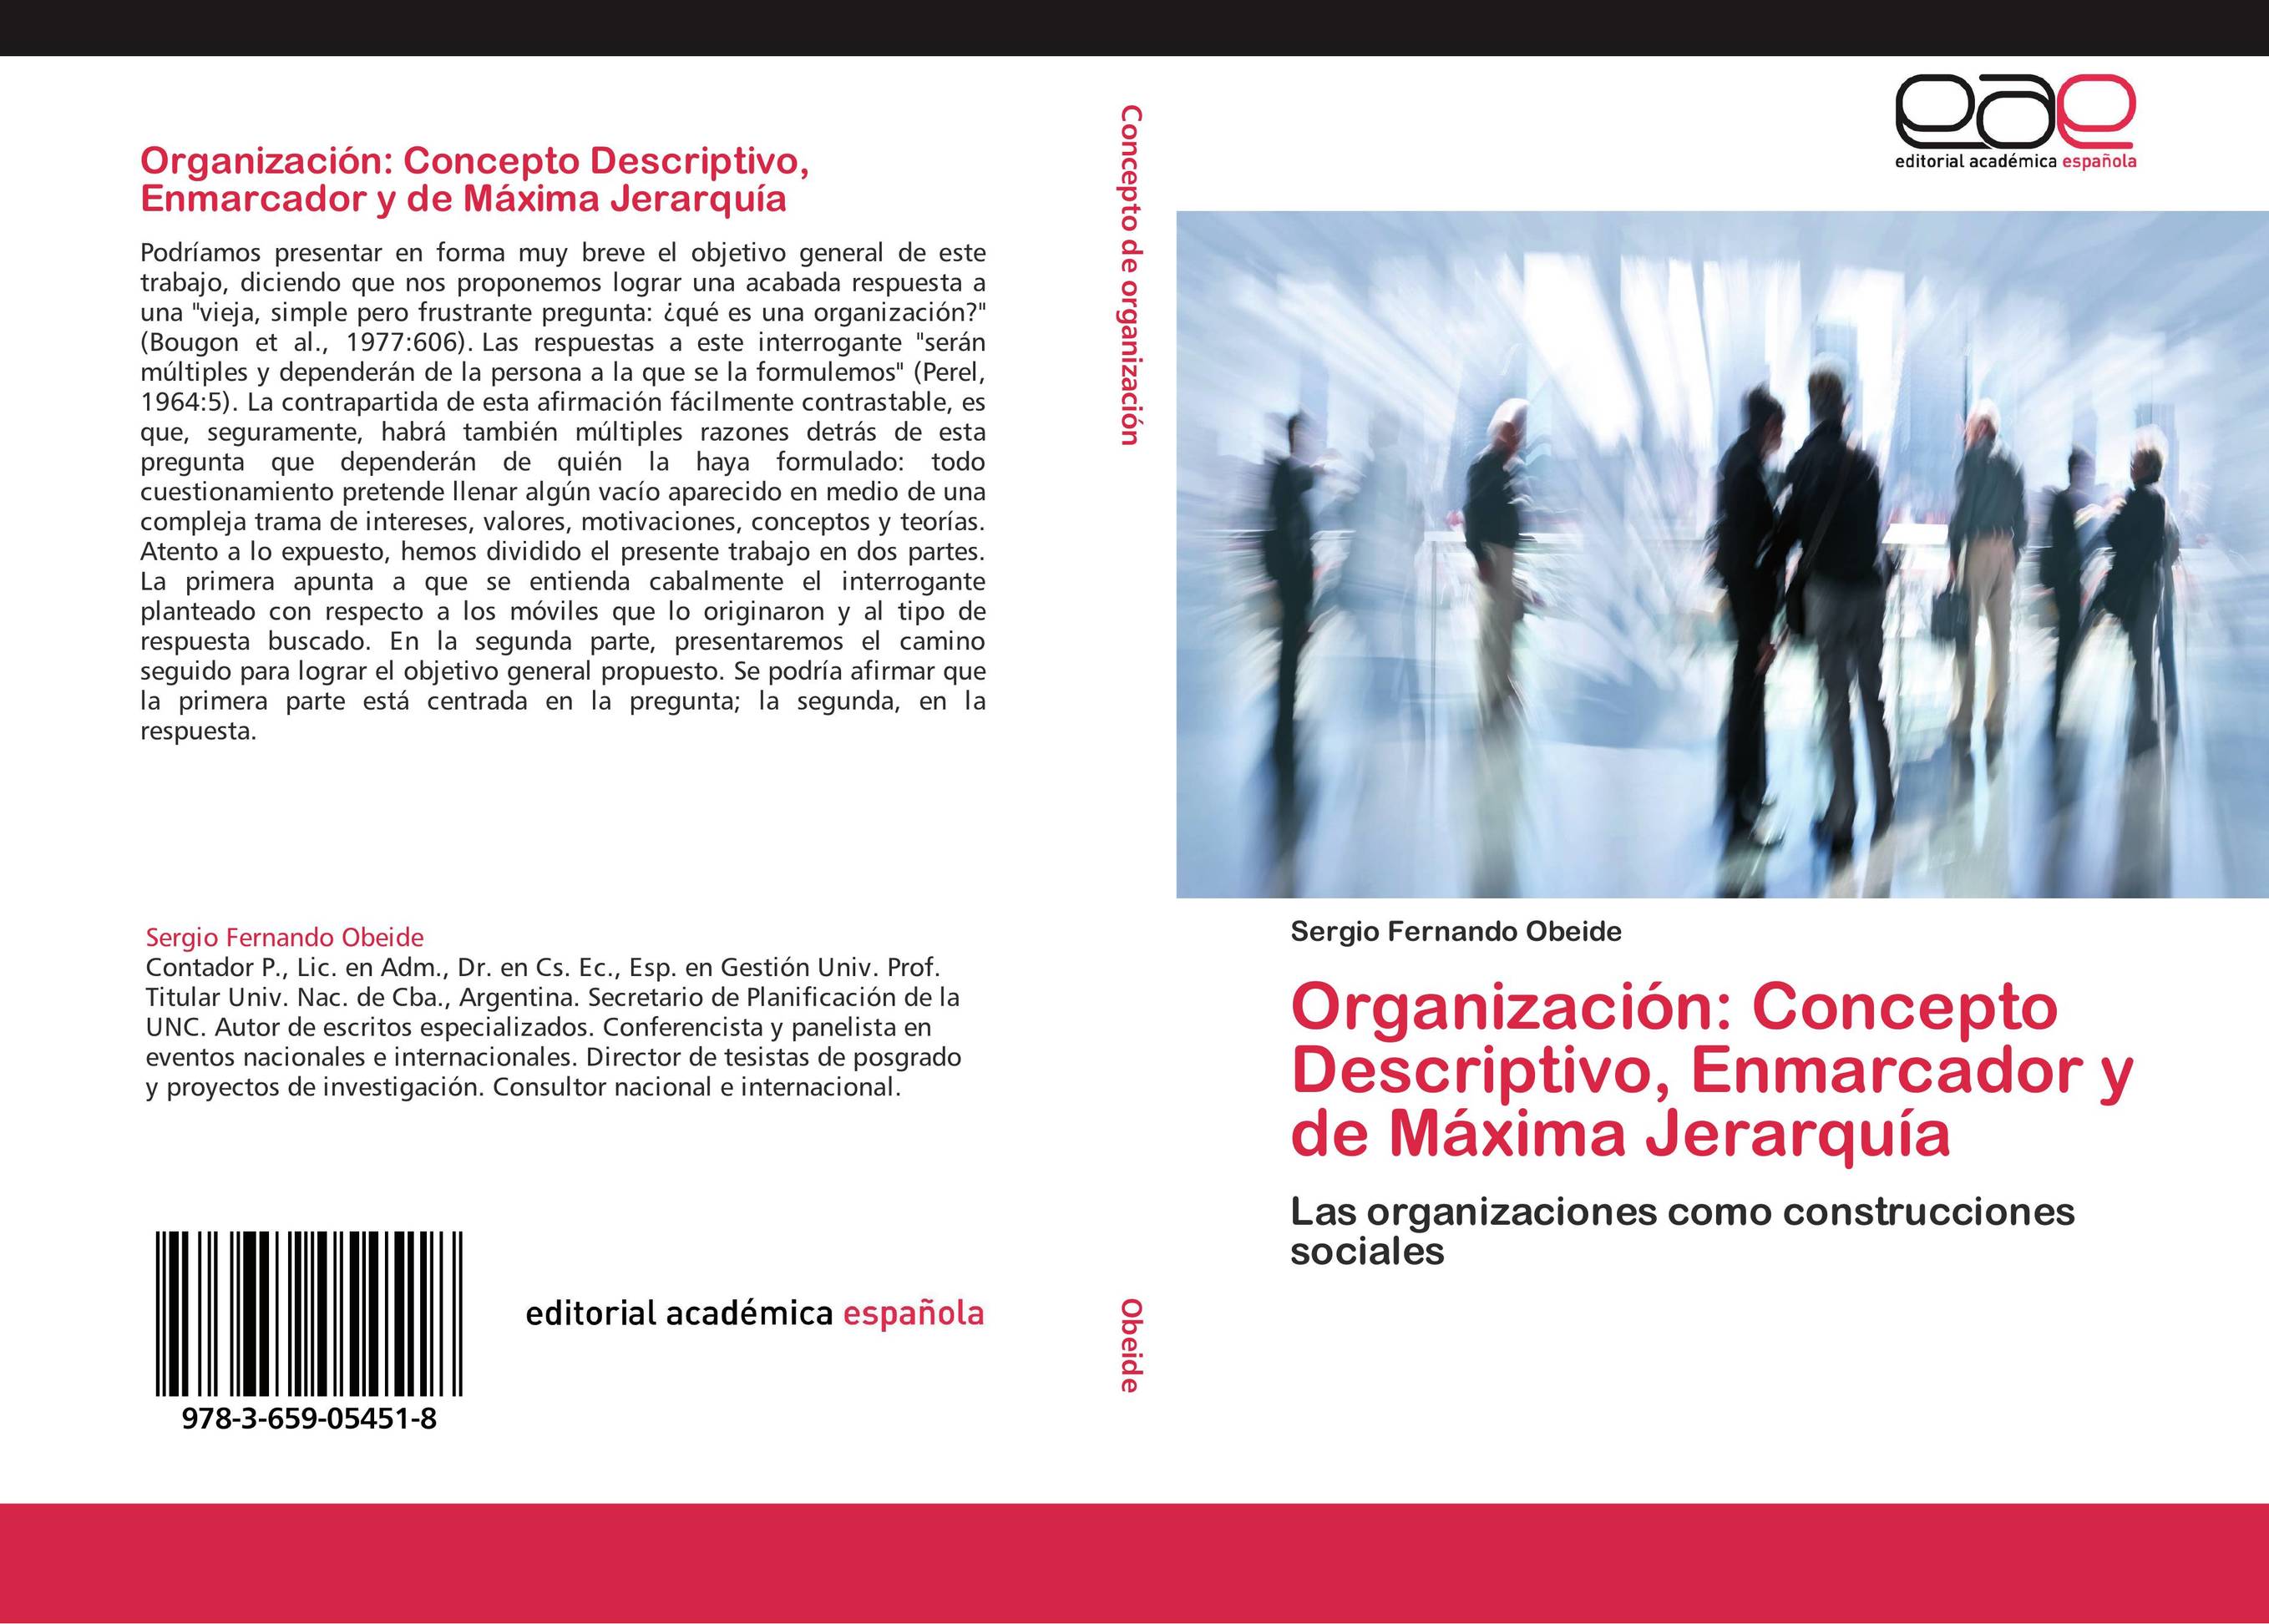 Organización: Concepto Descriptivo, Enmarcador y de Máxima Jerarquía